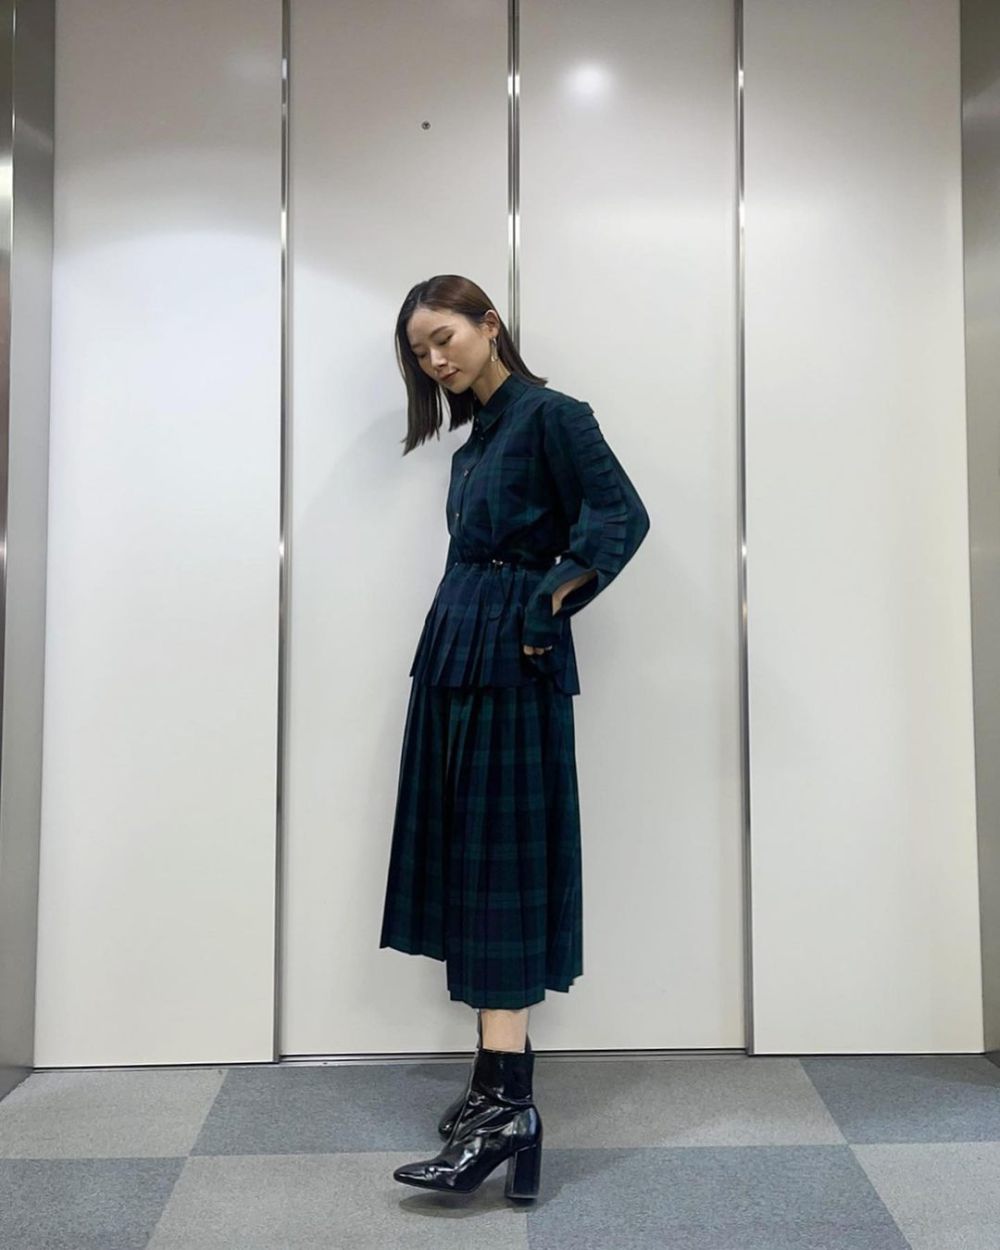 12 Ide Outfit Formal untuk Ngantor ala Nao Asahi, Fashionable!